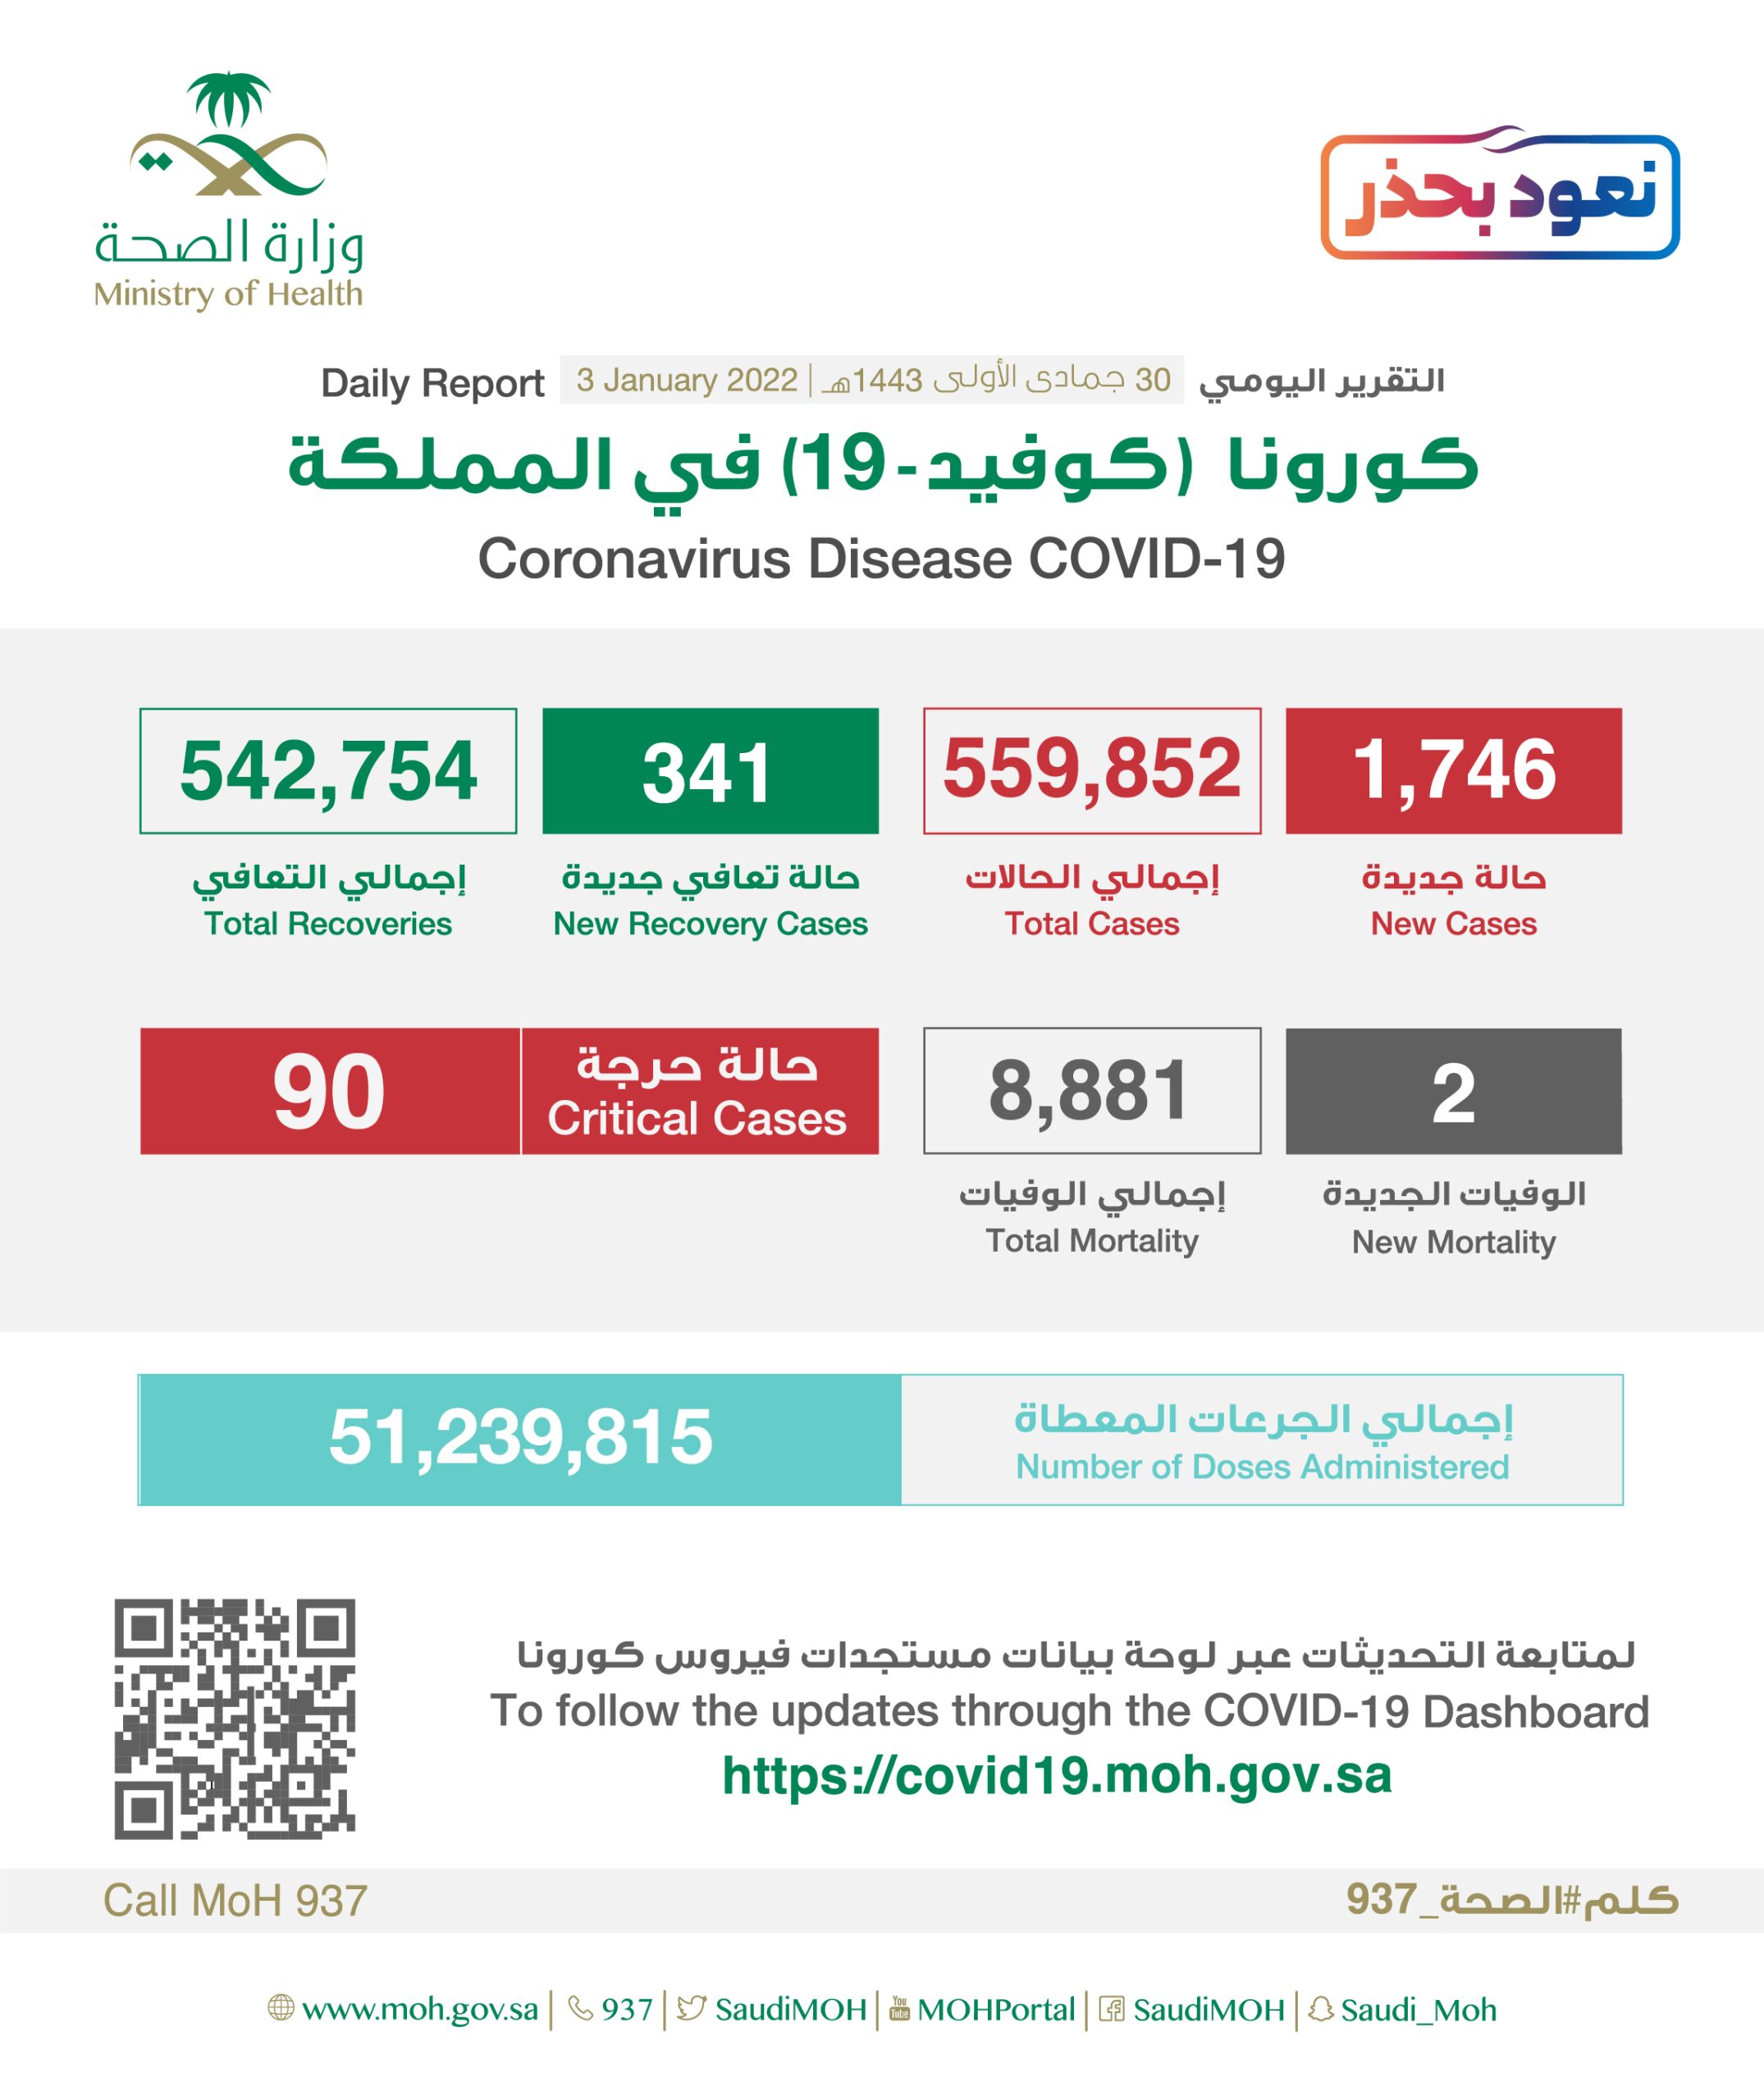 صورة كم عدد حالات كورونا في السعودية اليوم الاثنين 3 يناير ٢٠٢٢